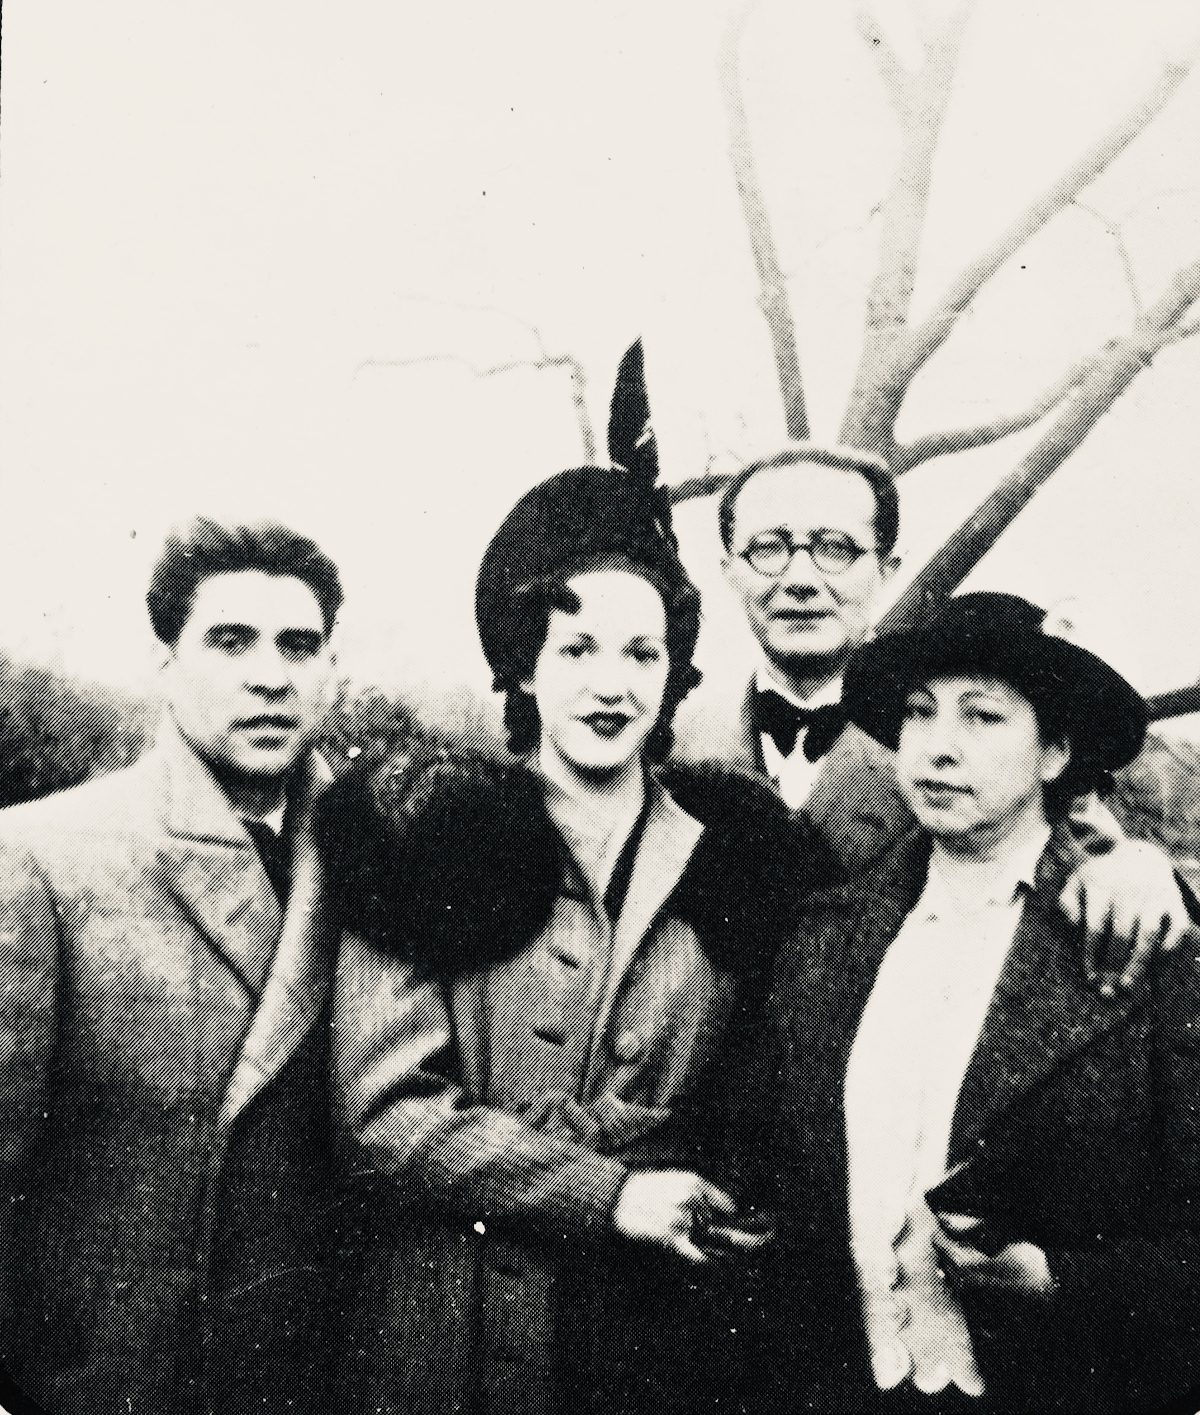 Luis Soto, María Docampo, Virxinia Pereira and Castelao in New York, in Luis Soto, "Castelao, a UPG e outras memorias" (1983)